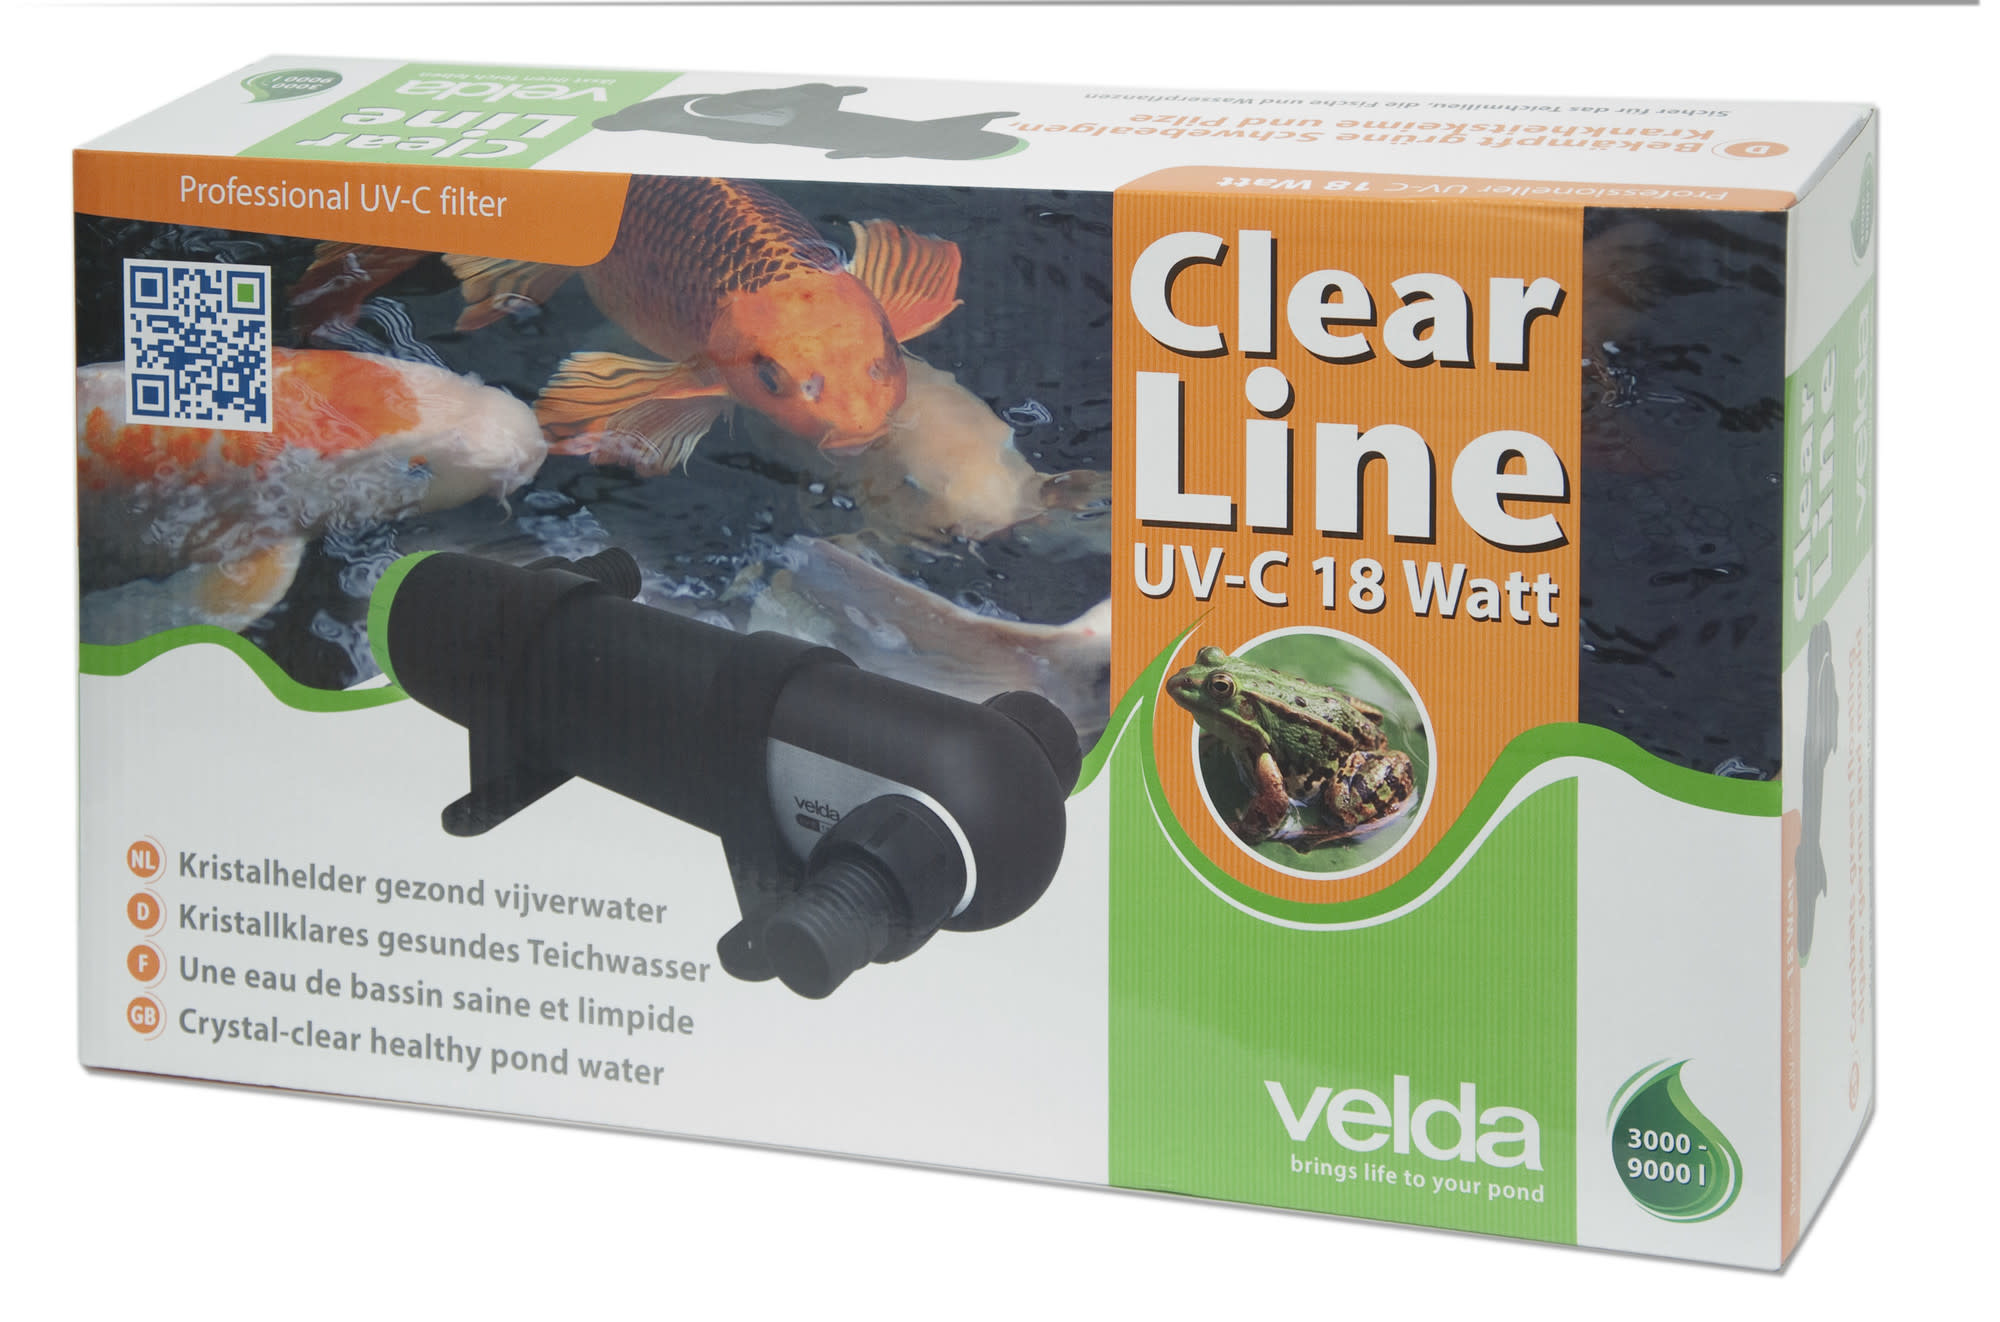 Afbeelding Velda Clear Line UV-C 18 watt door A2koi.nl